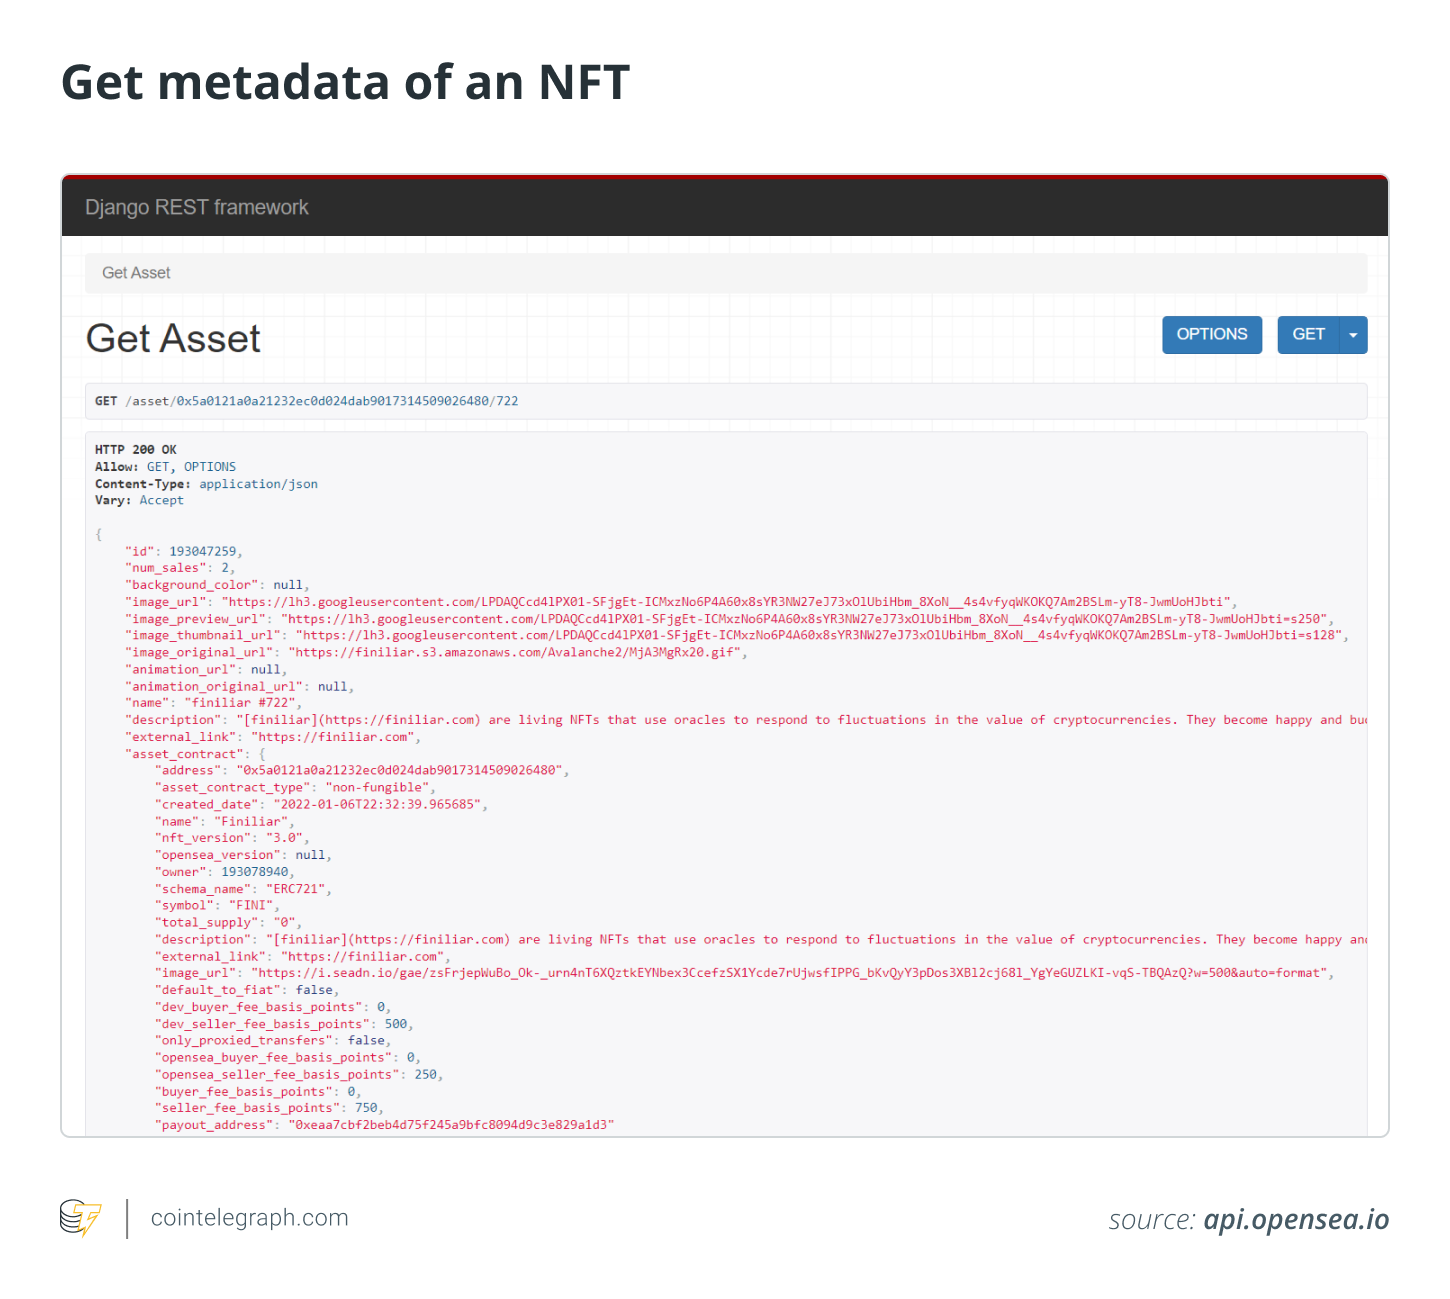 Get metadata of an NFT